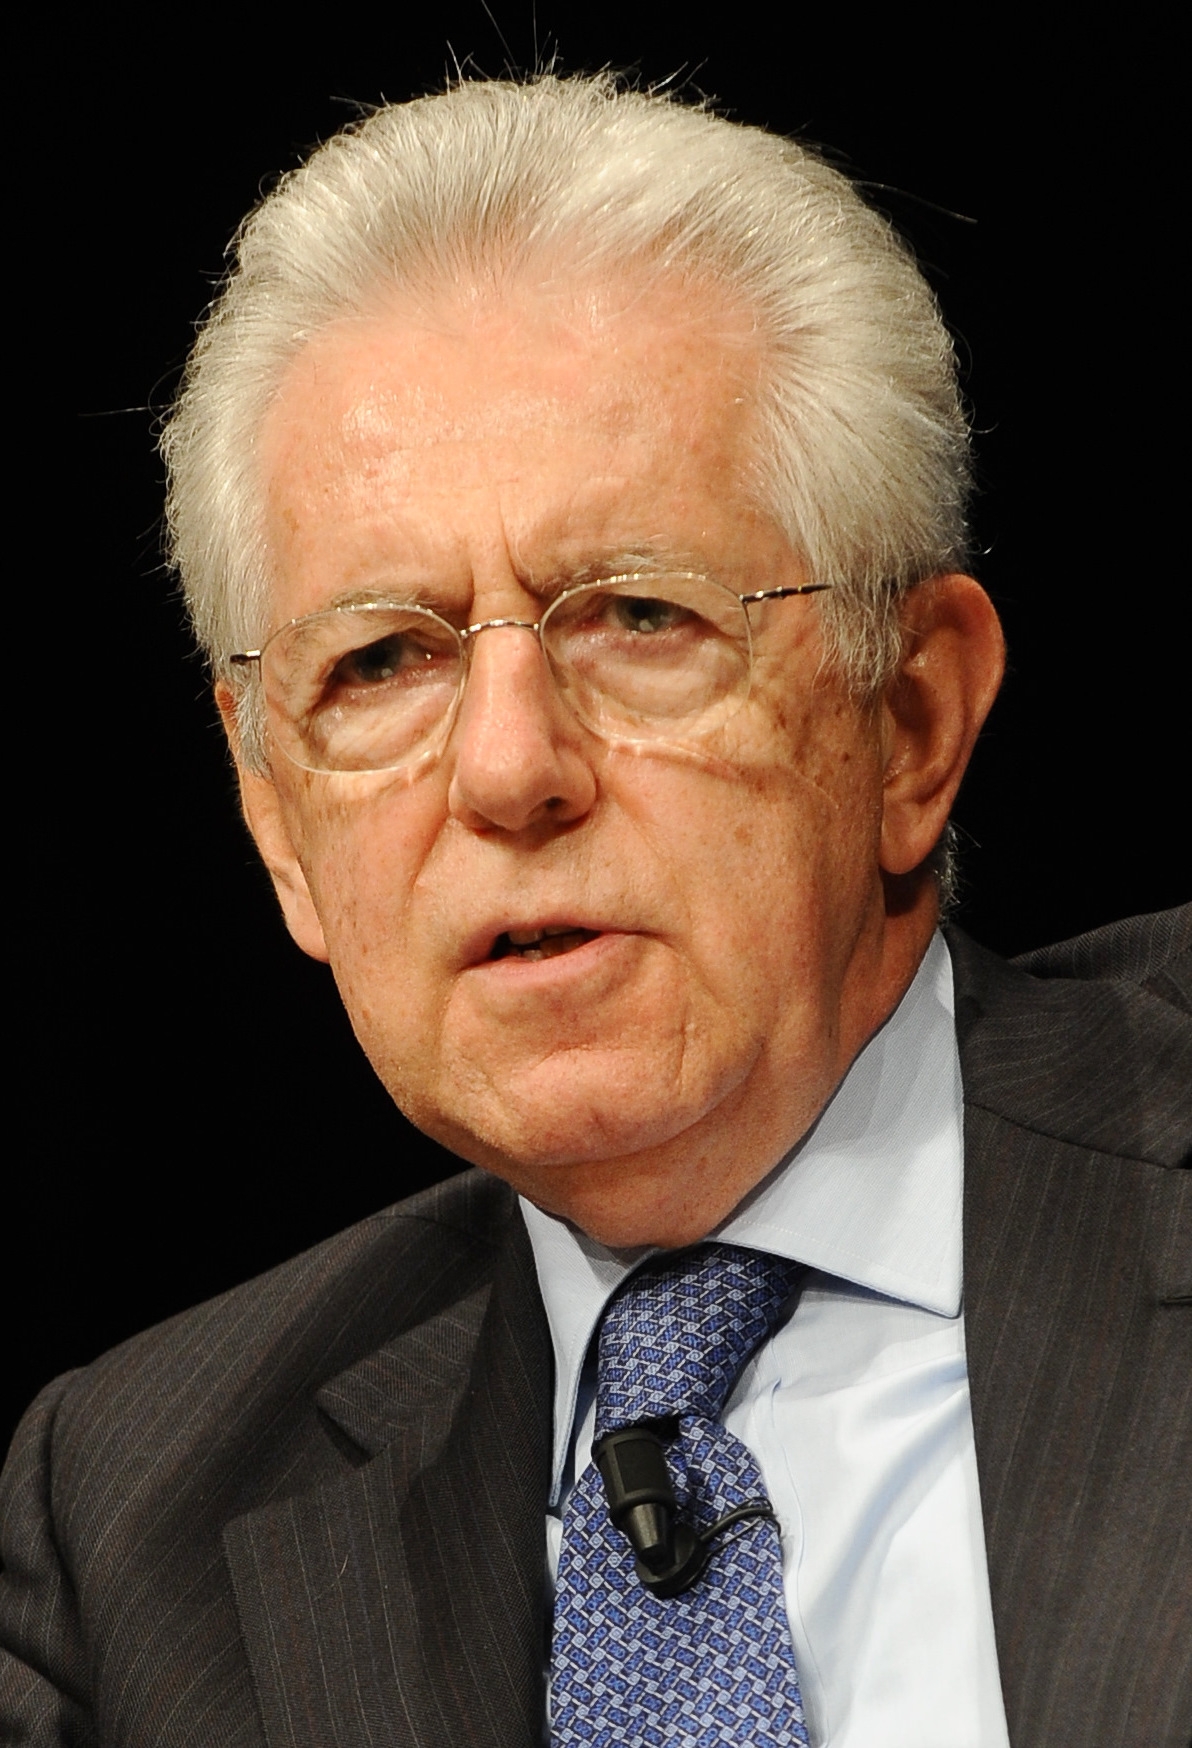 auteur Mario Monti de la citation Si les gouvernements se laissent pleinement liés par les décisions de leurs parlements sans protéger leur propre liberté d'agir, une rupture de l'Europe serait un résultat plus probable qu'une intégration plus approfondie.